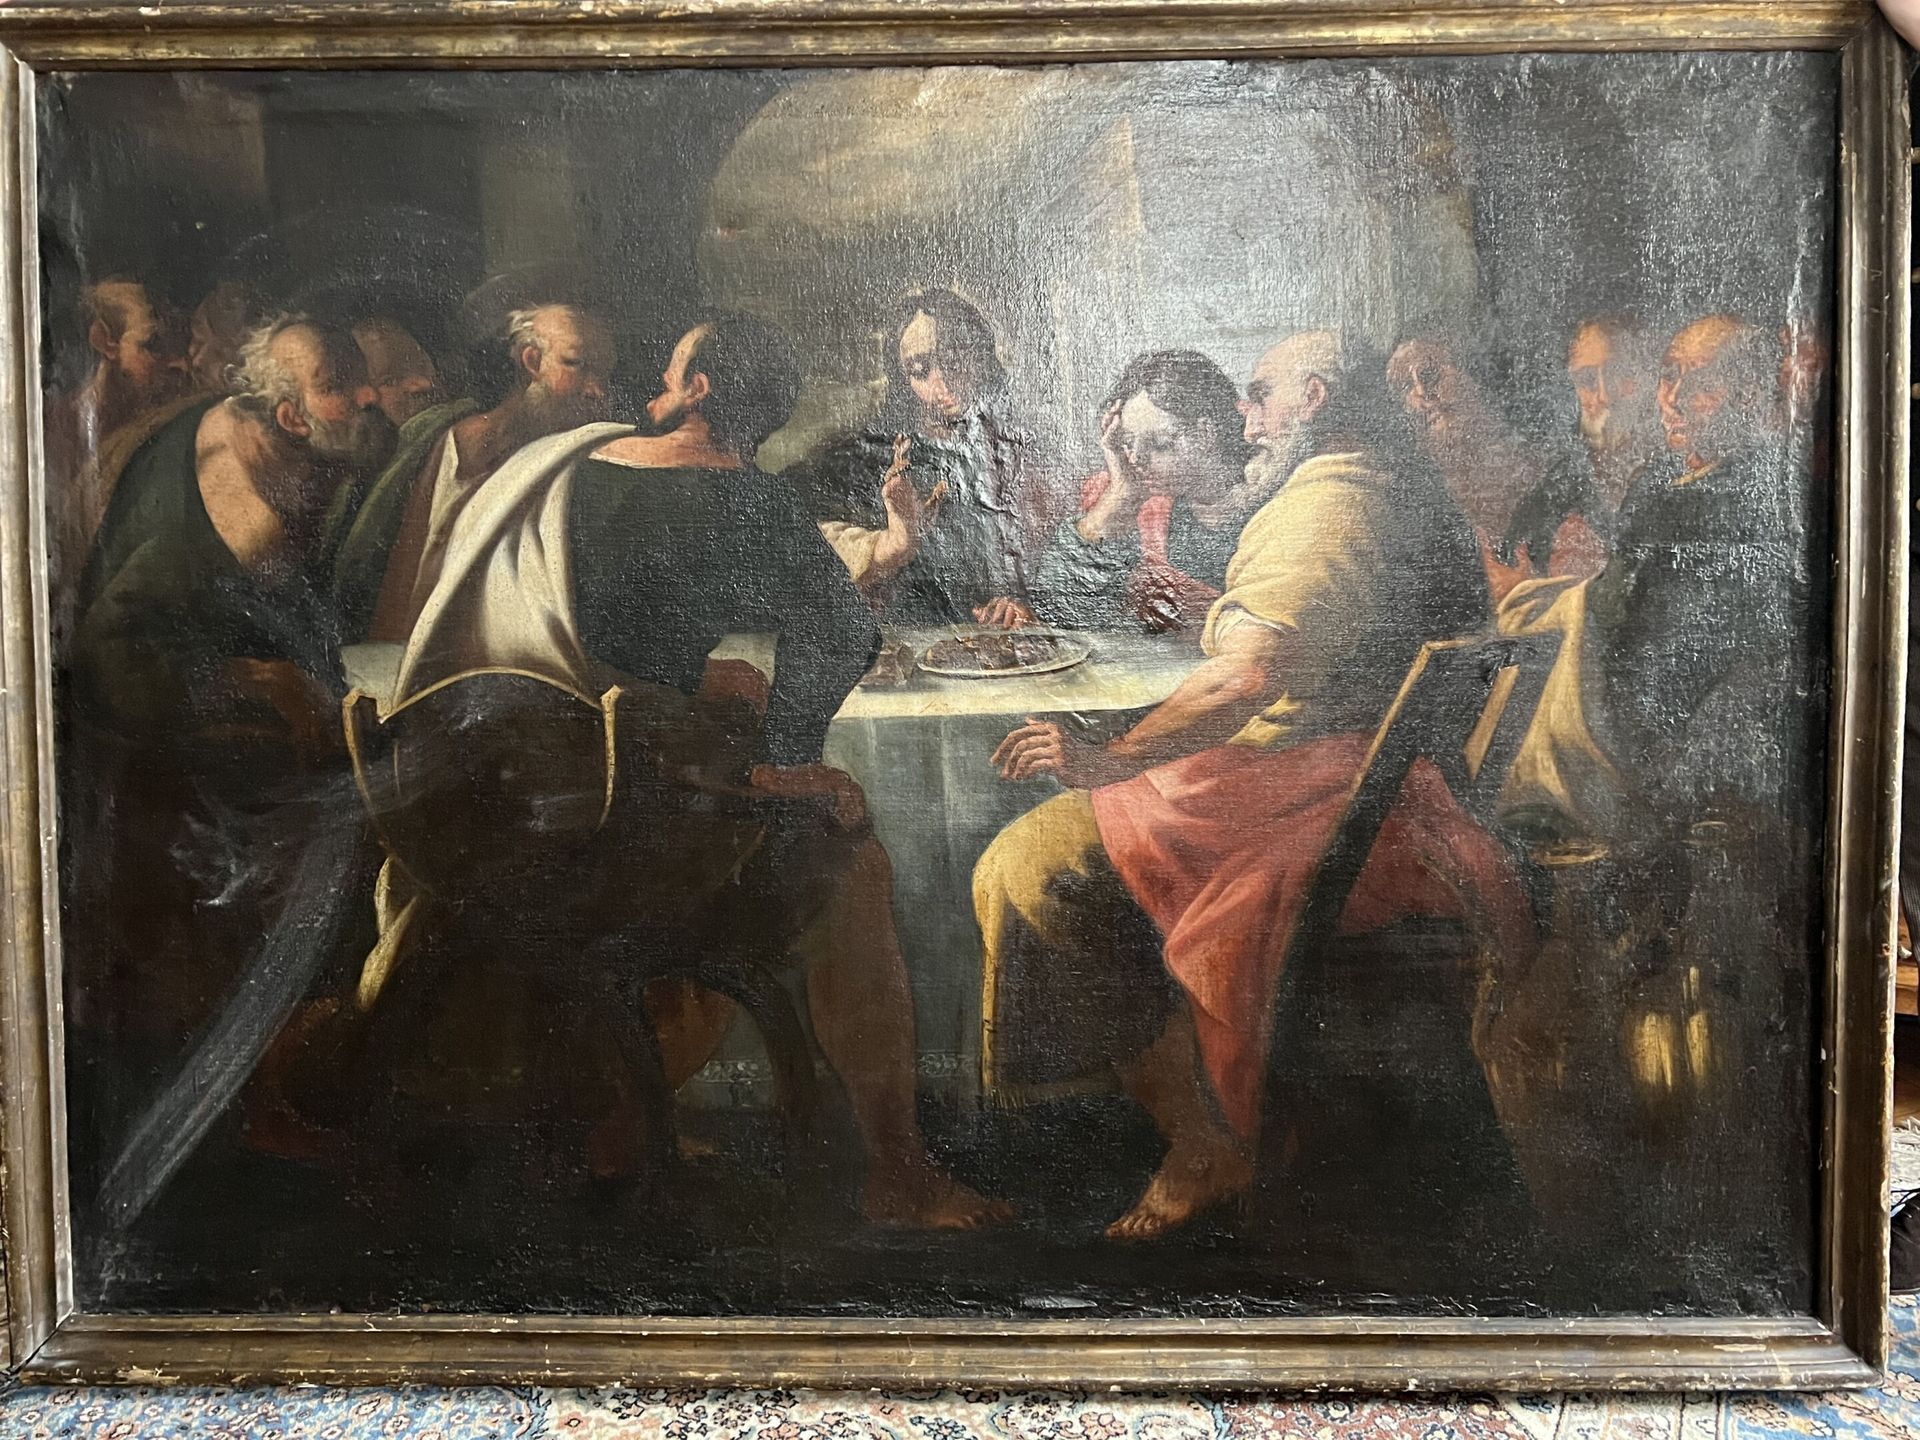 Null Scuola del XVII secolo
L'ultima cena
Olio su tela 
(restauri)
128 x 183 cm